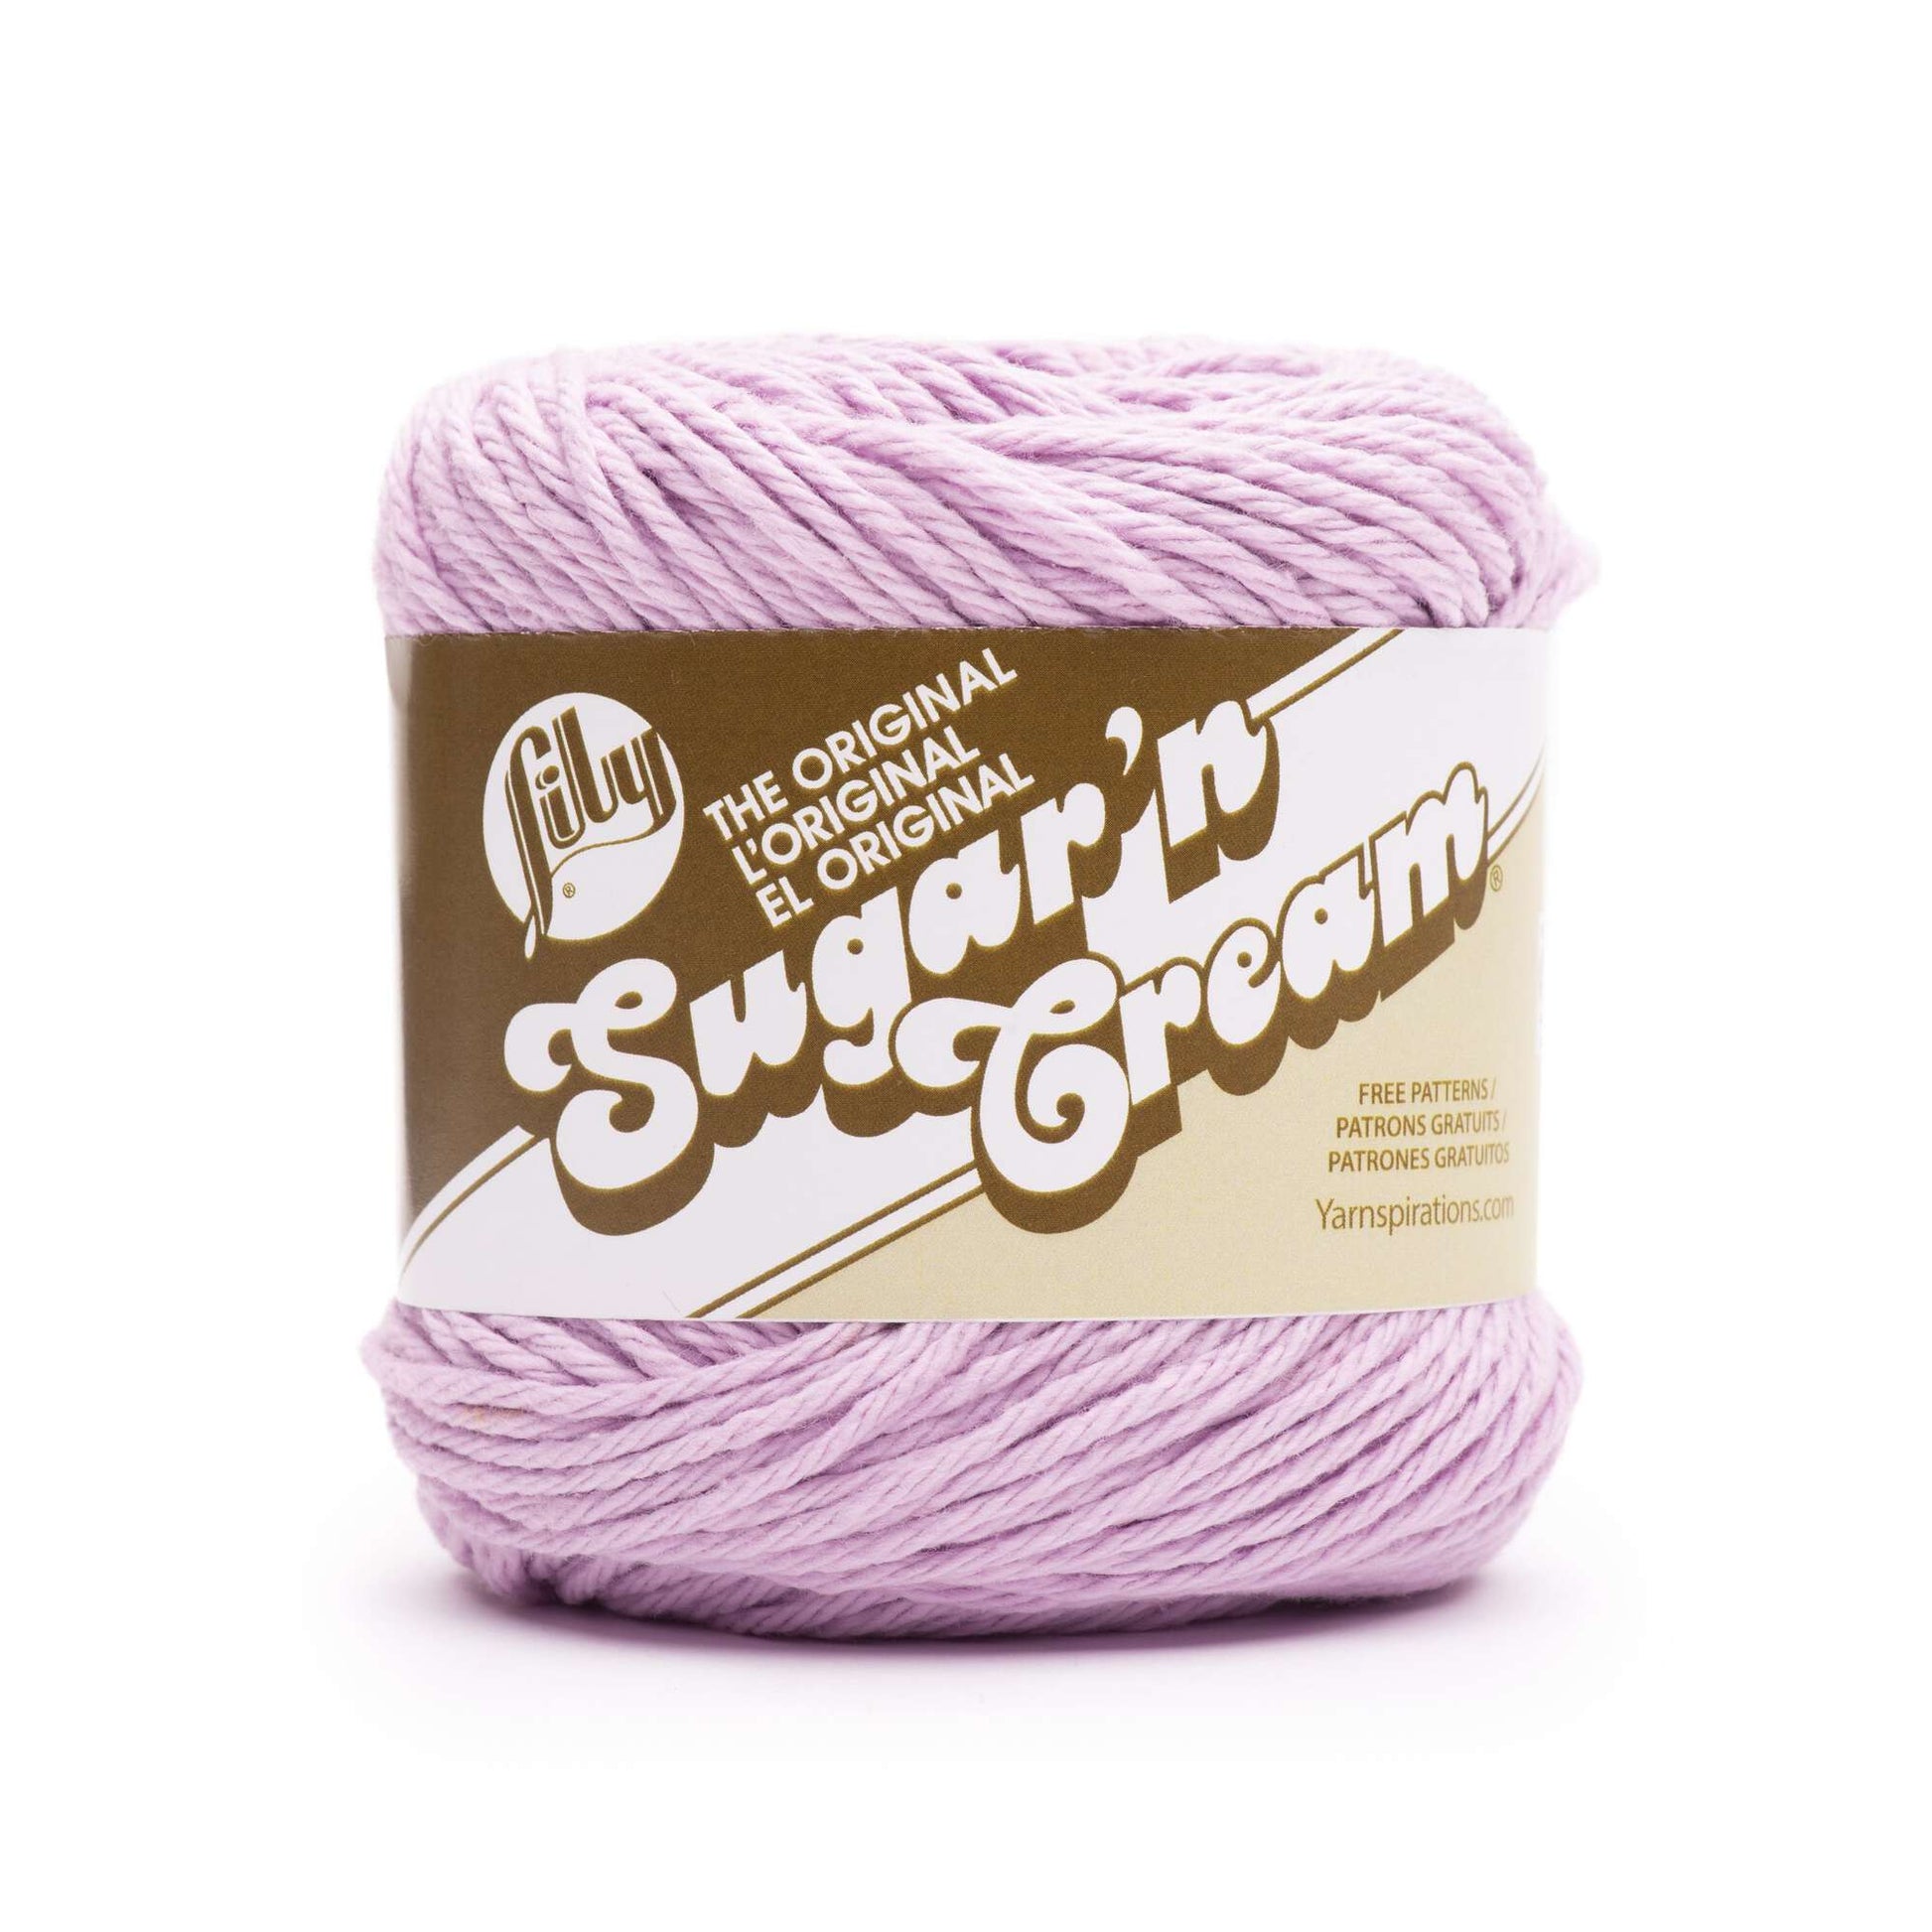 Lily Sugar 'n' Cream Yarn